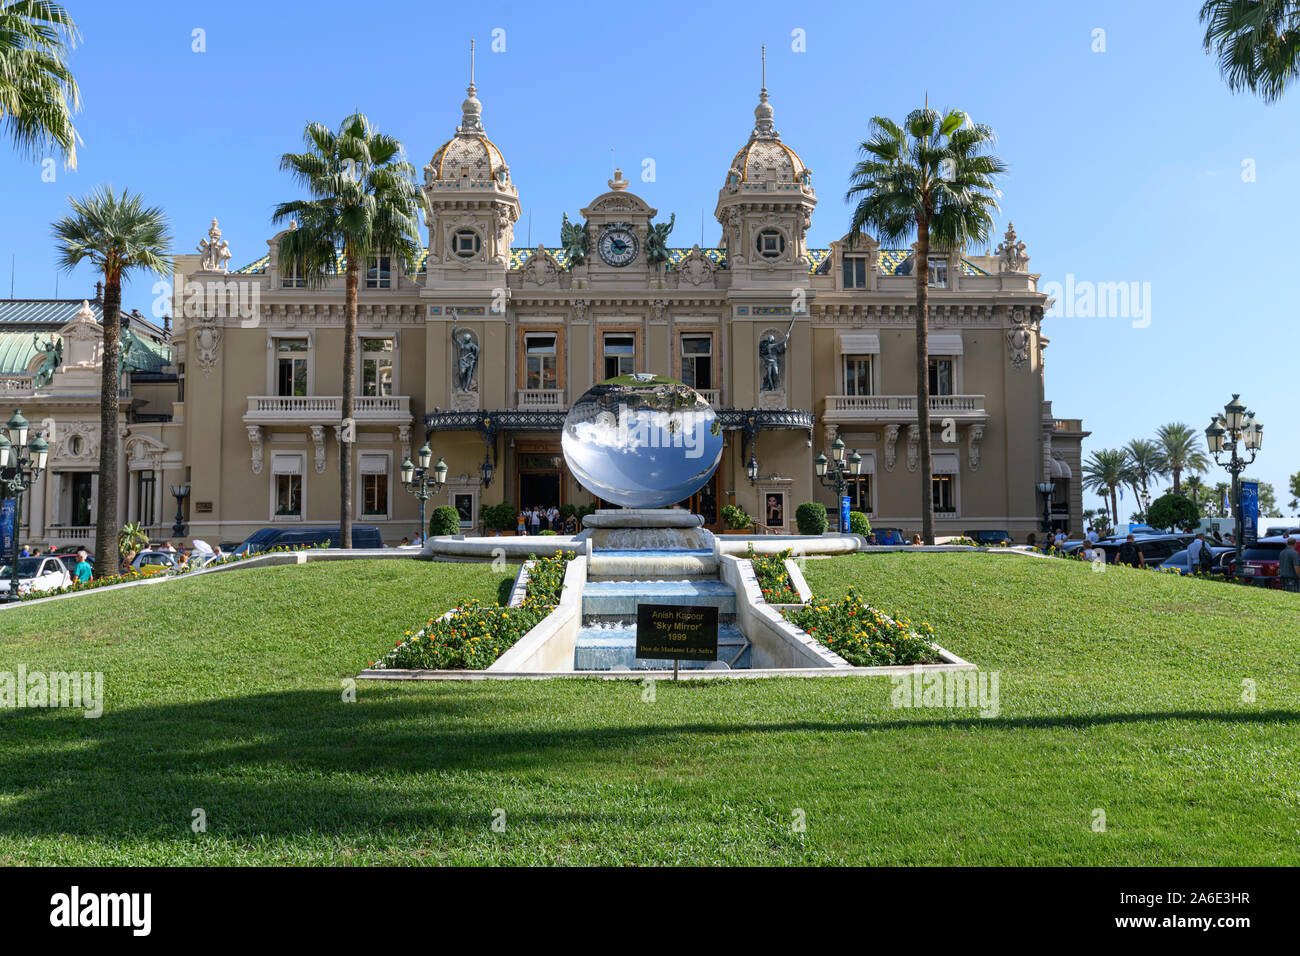 The Casino Monte Carlo Monaco and the Sky Mirror and Fountain. Stock Photo